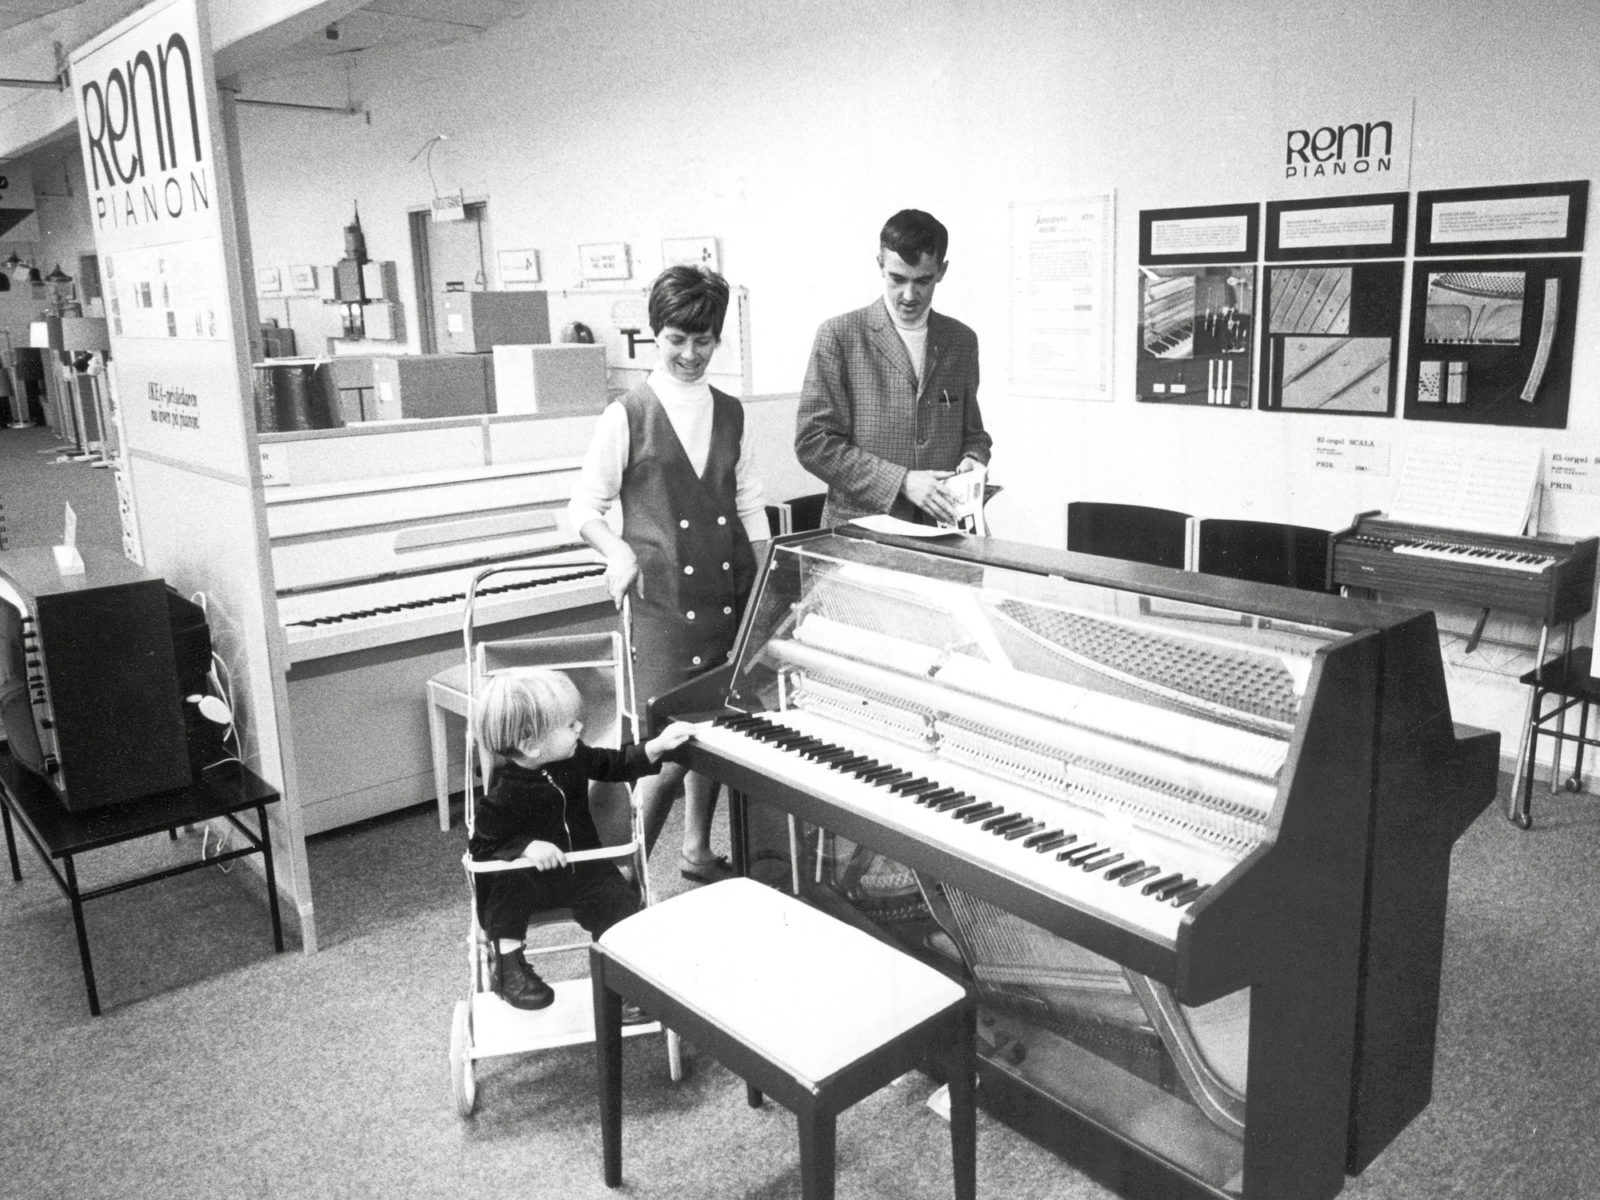 Familia joven: un hombre, una mujer y un niño en un cochecito miran los pianos expuestos en una tienda de IKEA en 1973.